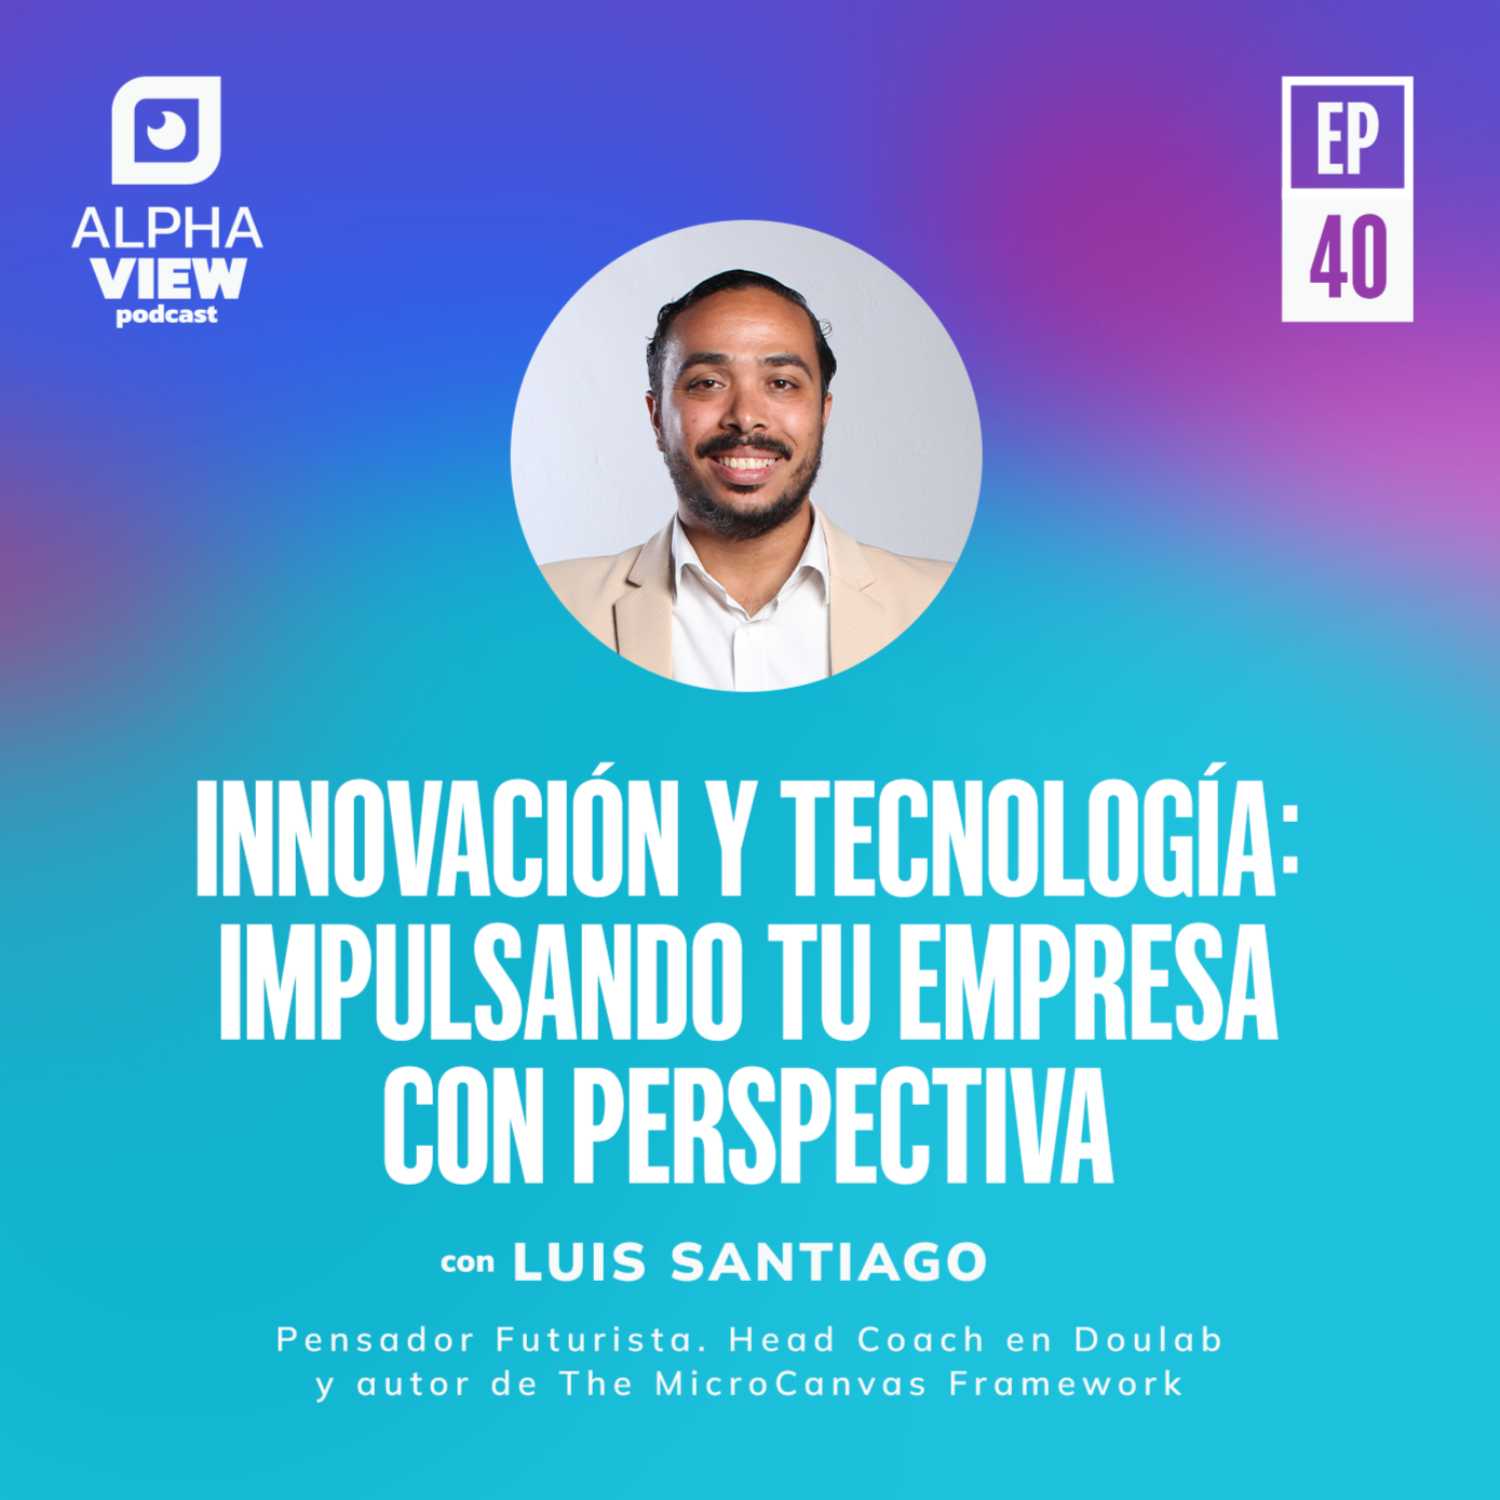 "Innovación y tecnología: Impulsando tu empresa con perspectiva" con Luis Santiago